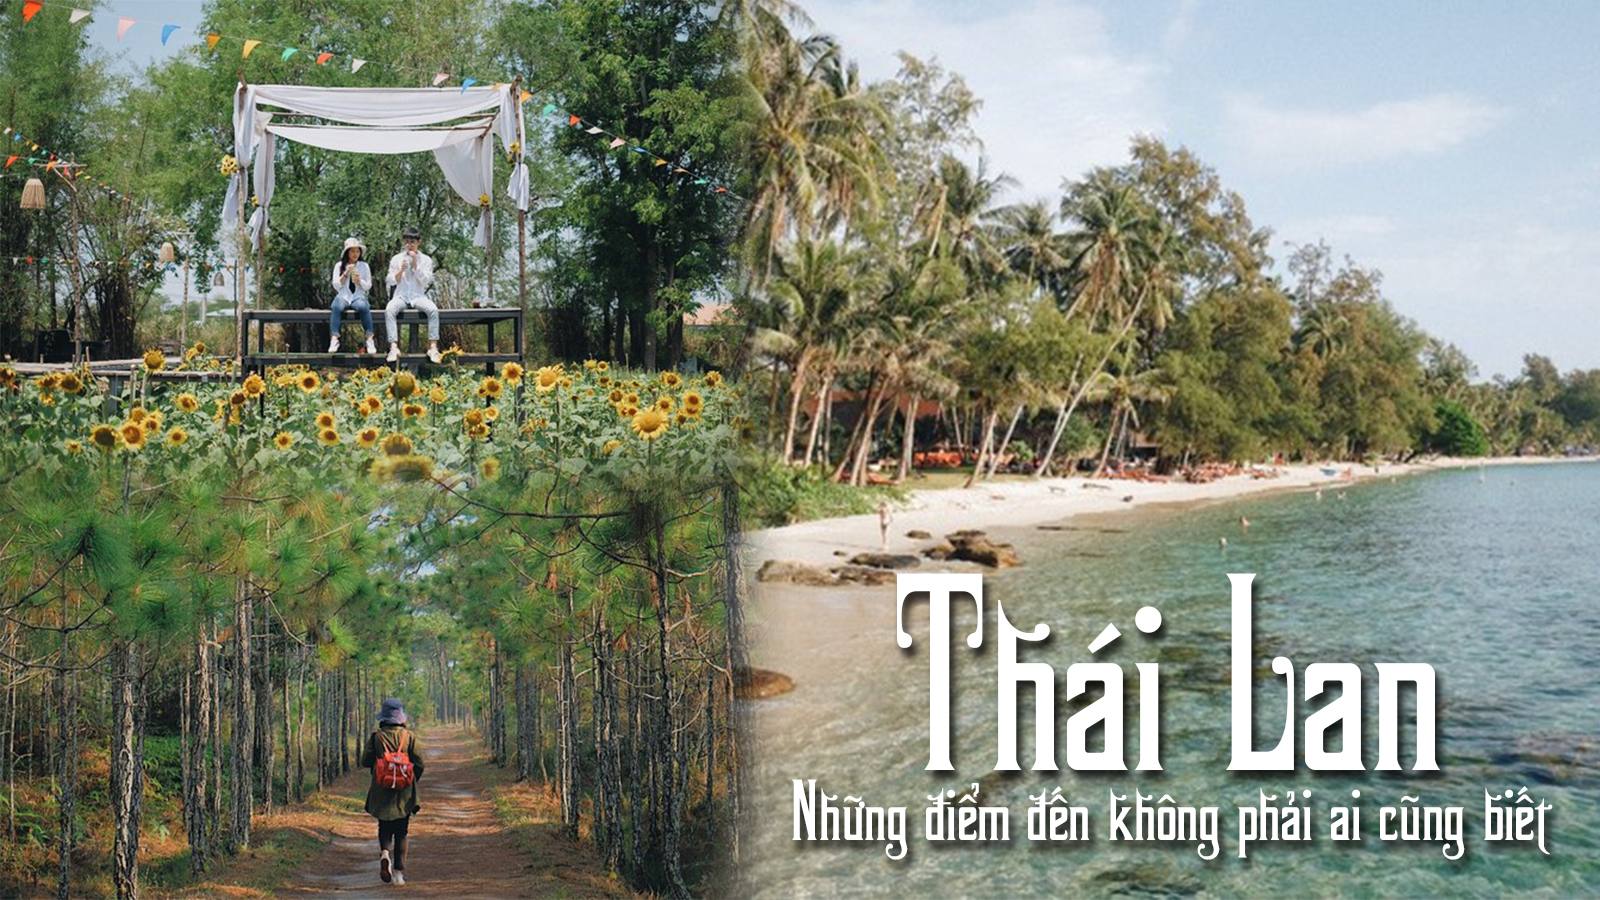 Du lịch Thái Lan “xịn” như travel blogger bản địa: Những điểm đến không phải ai cũng biết! - 1